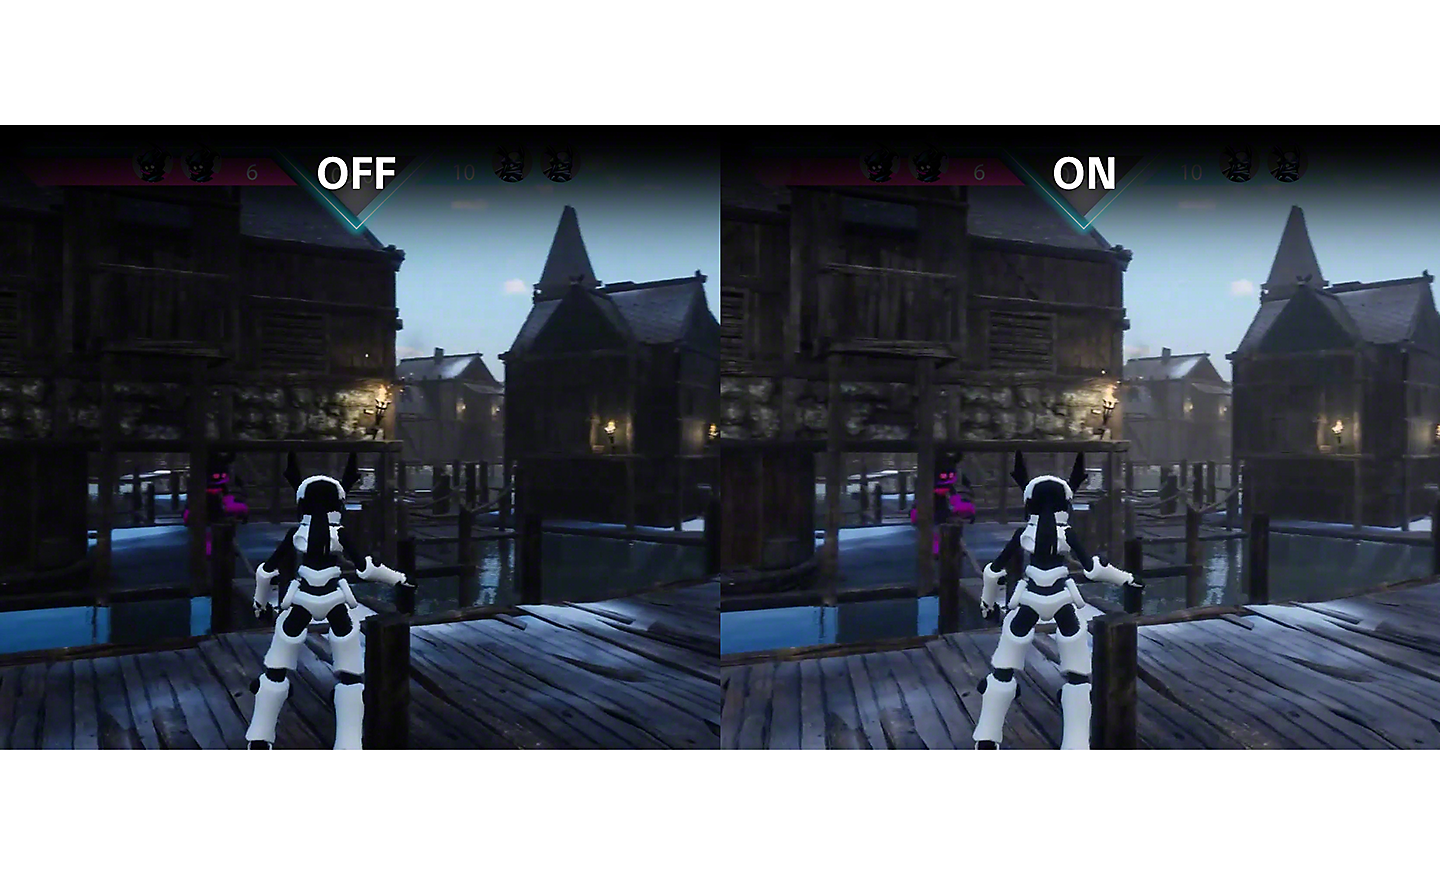 Dobbeltbilde fra et bilspill: Det høyre bildet er lysere enn det venstre